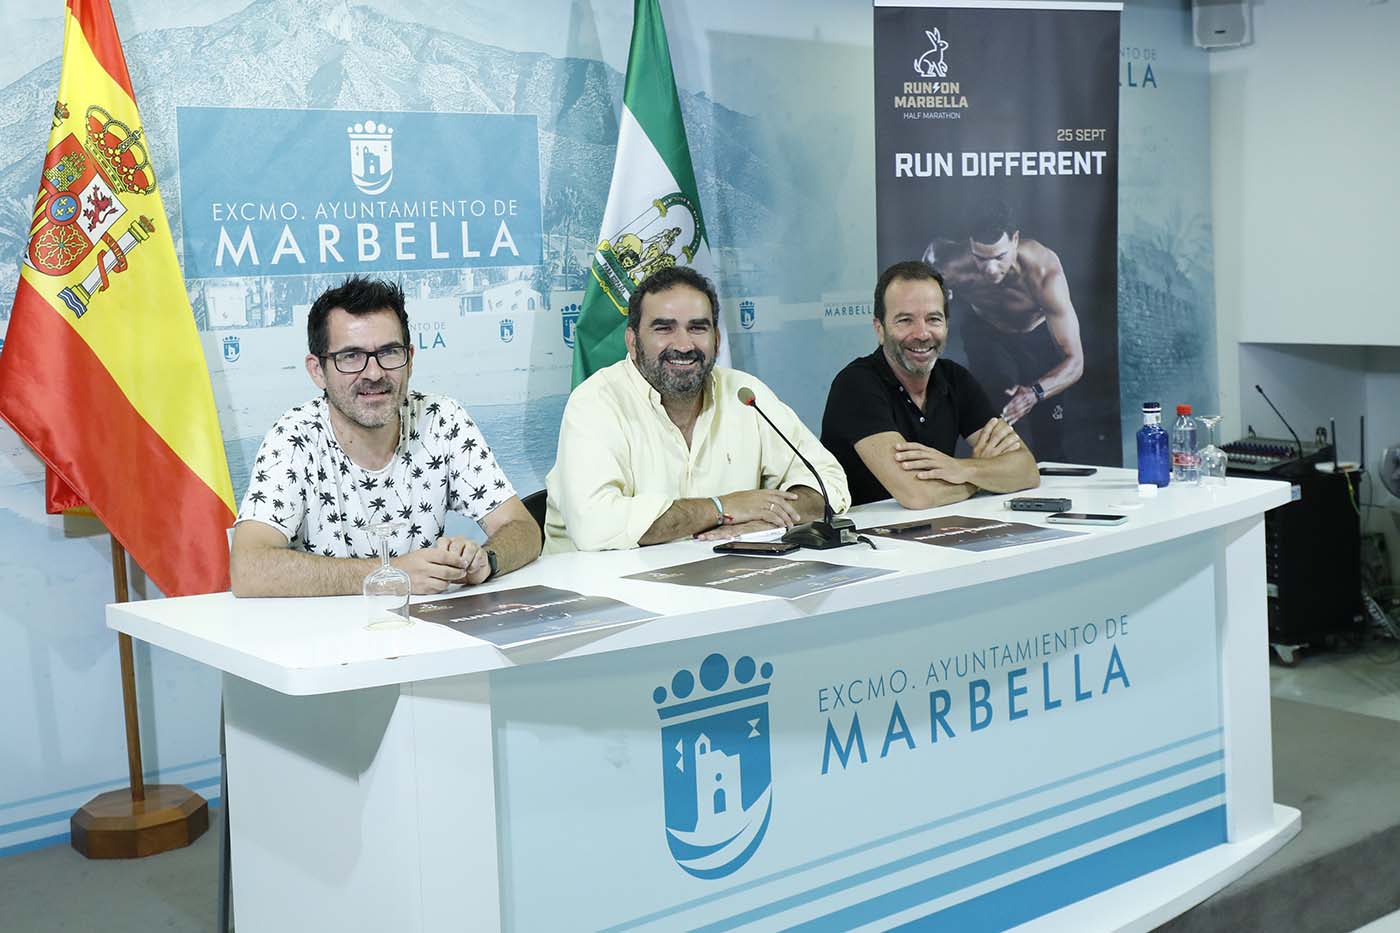 Marbella albergará el 25 de septiembre un nuevo concepto de la Media Maratón bajo el eslogan ‘Run different’, con un circuito  llano que discurrirá por el paseo marítimo y salida y meta en el Arco de entrada